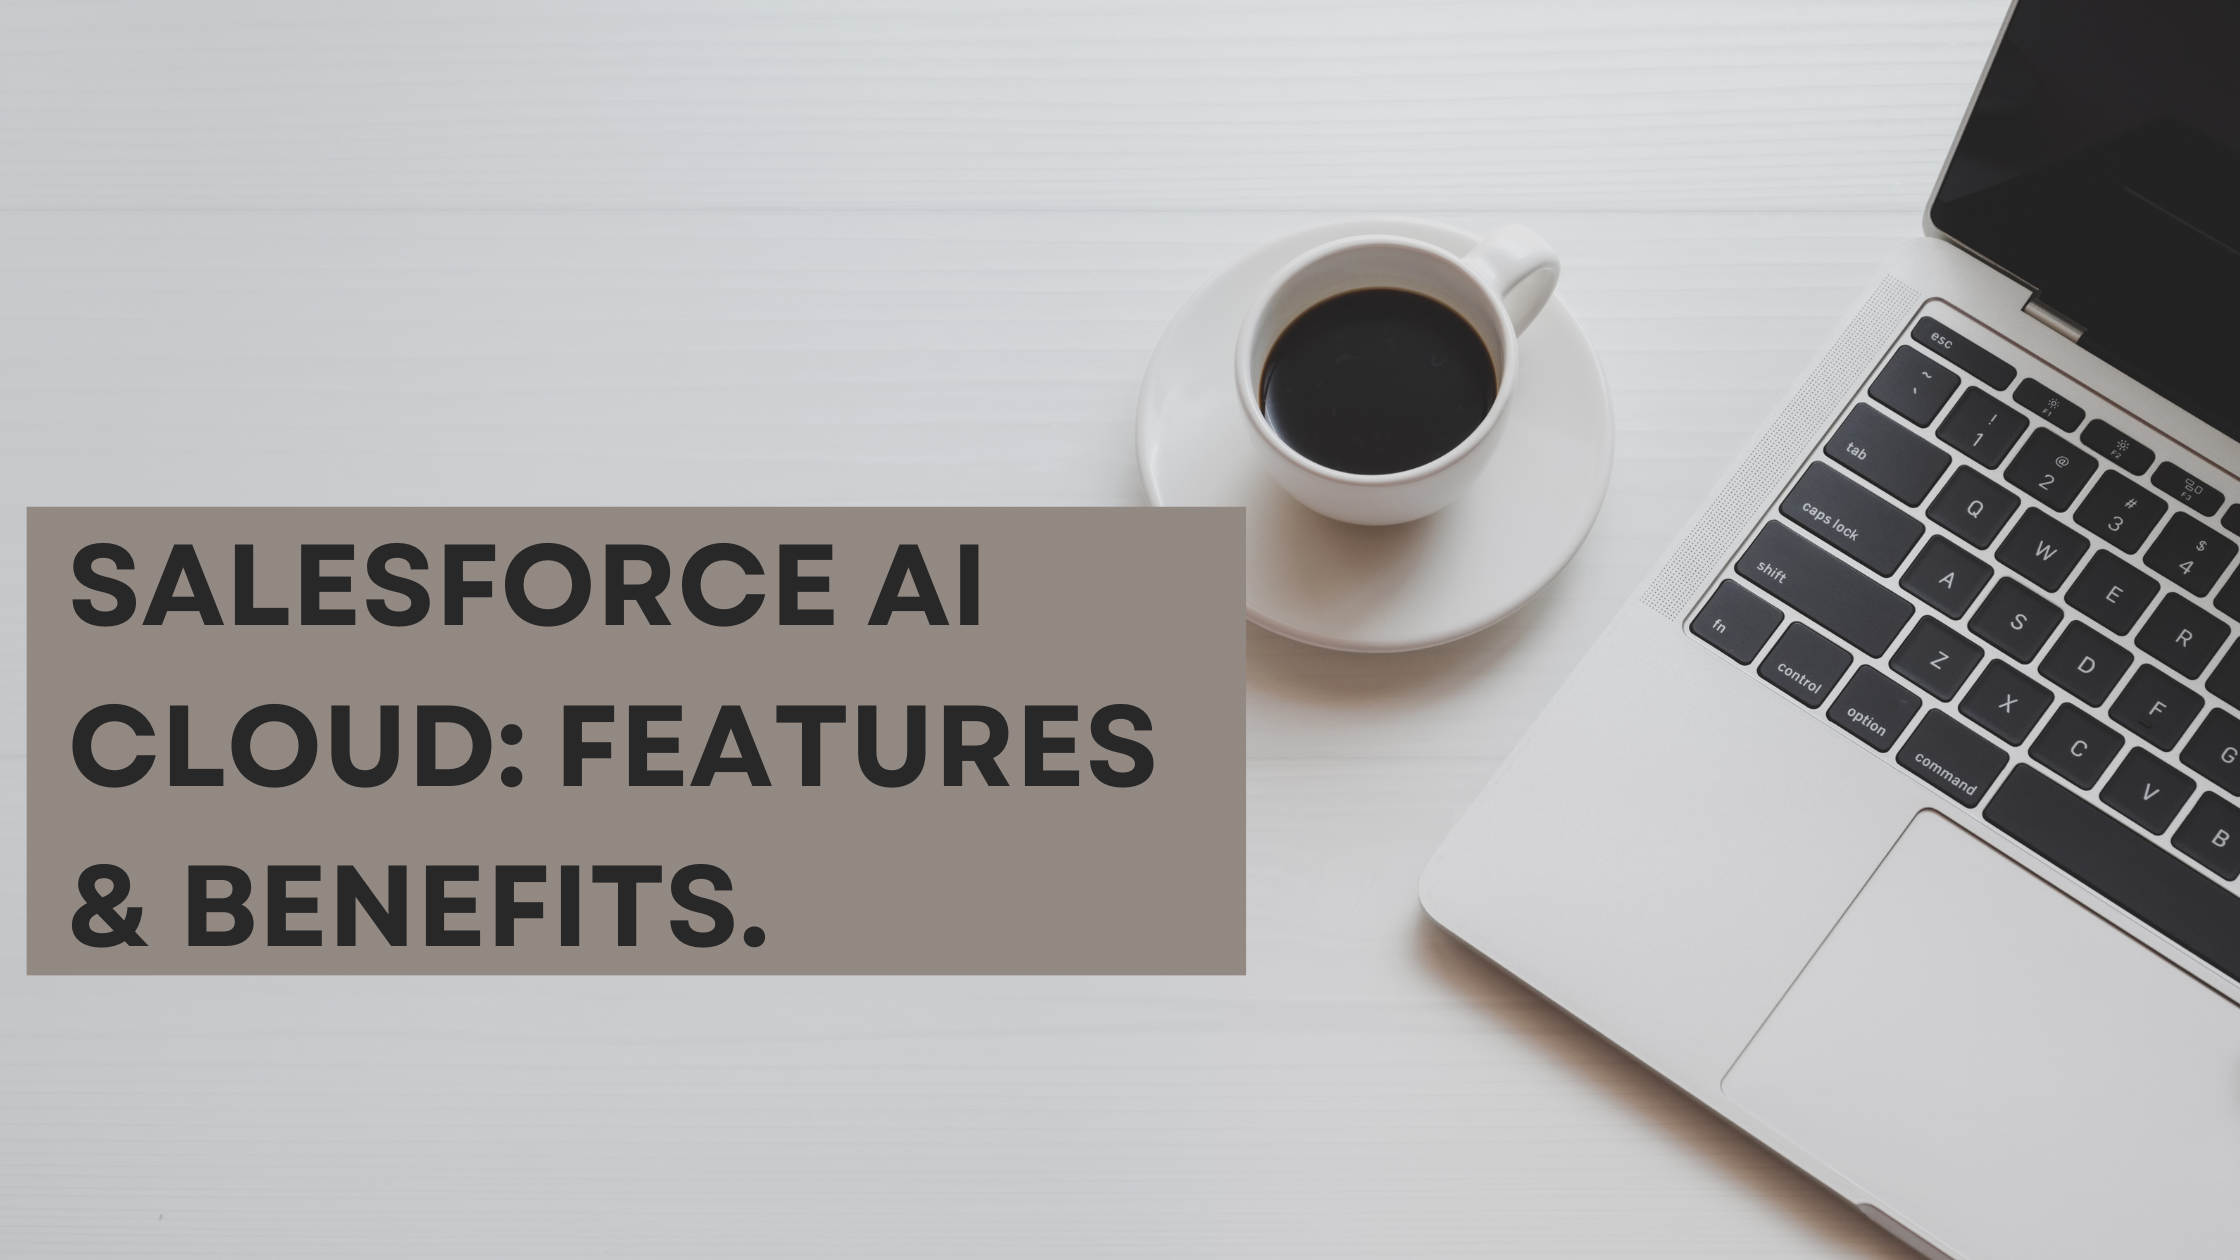 Salesforce AI Cloud Features & Benefits.